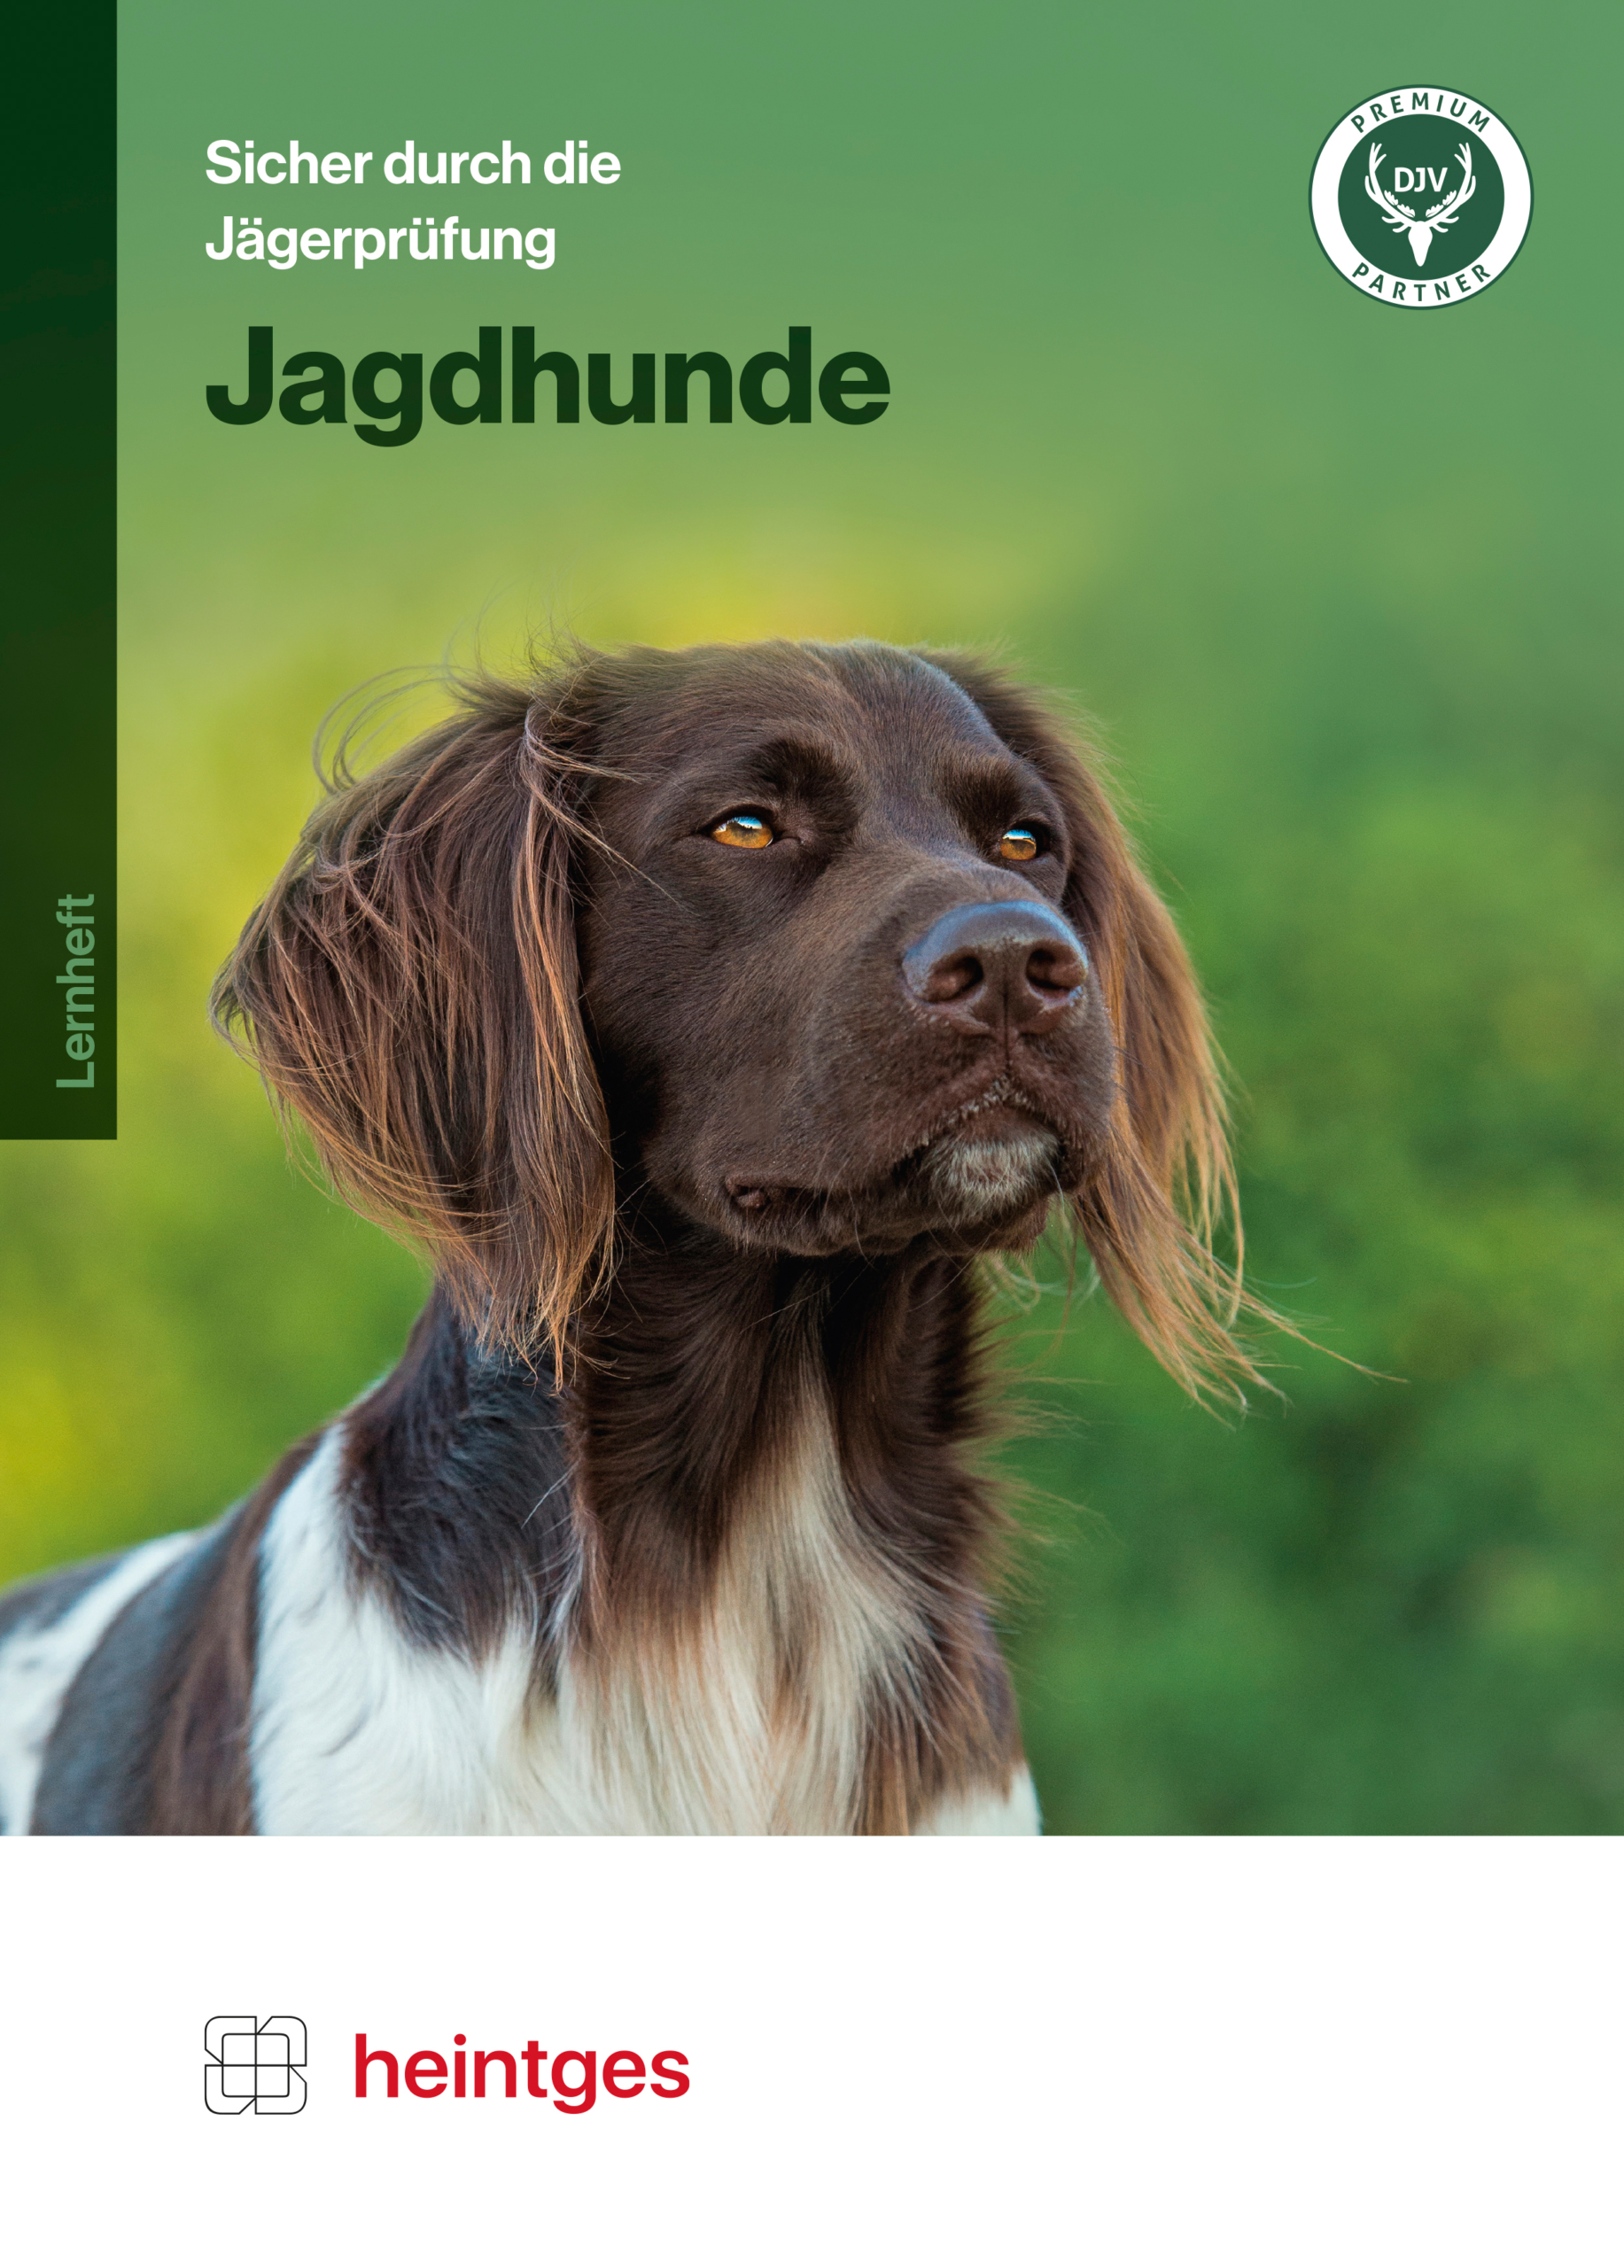 Heintges Printausgabe - Jagdhunde - Sicher durch die Jägerprüfung